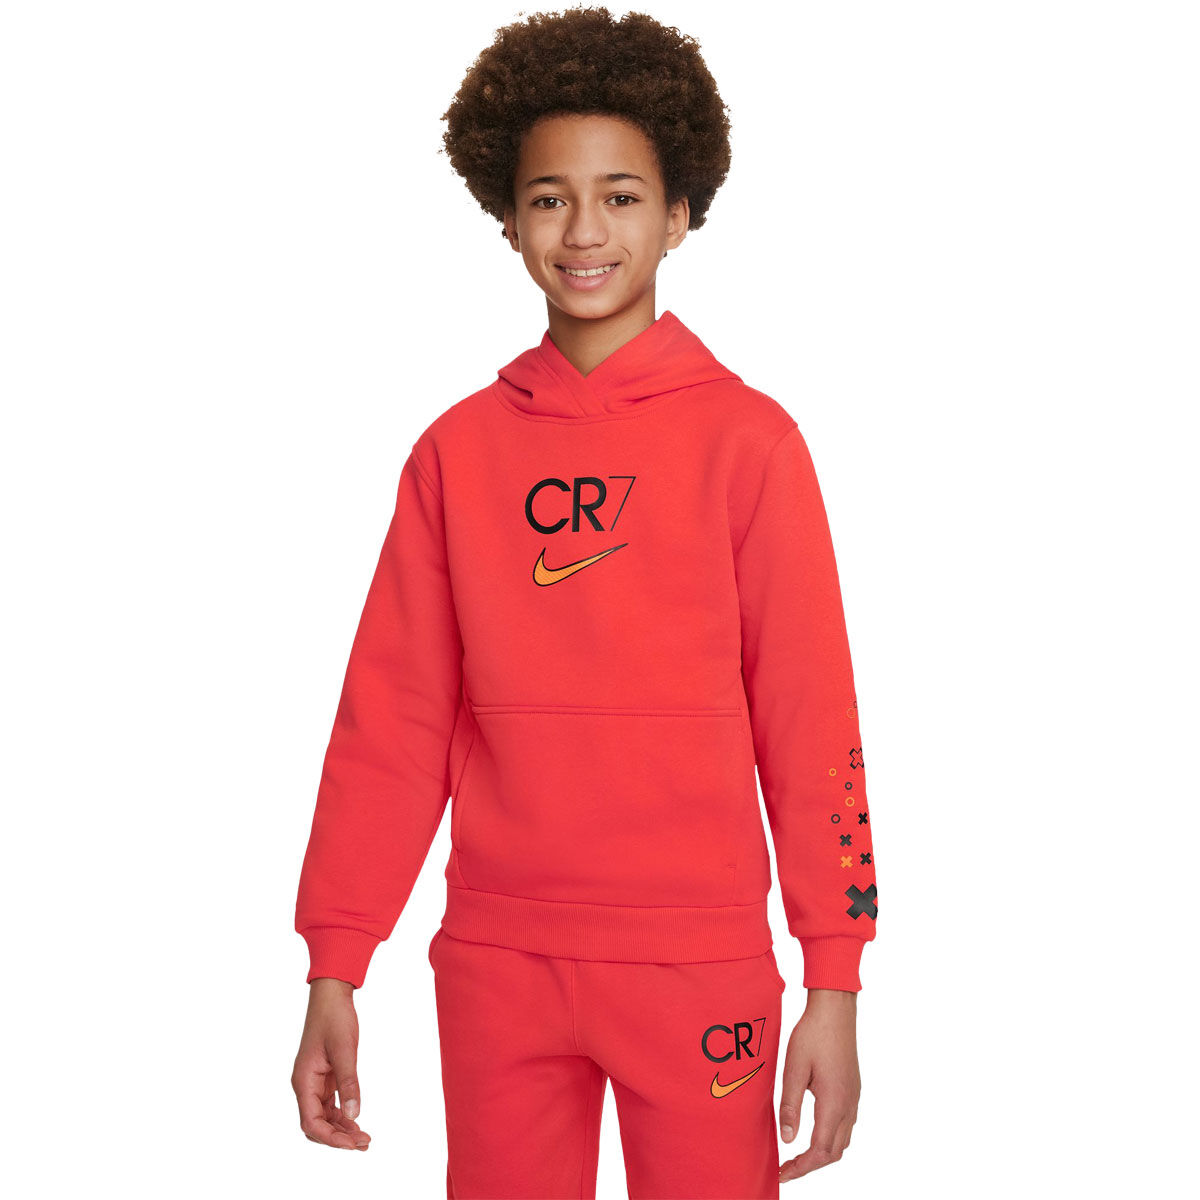 CR7-Boy's Pajamas 100% Cotton